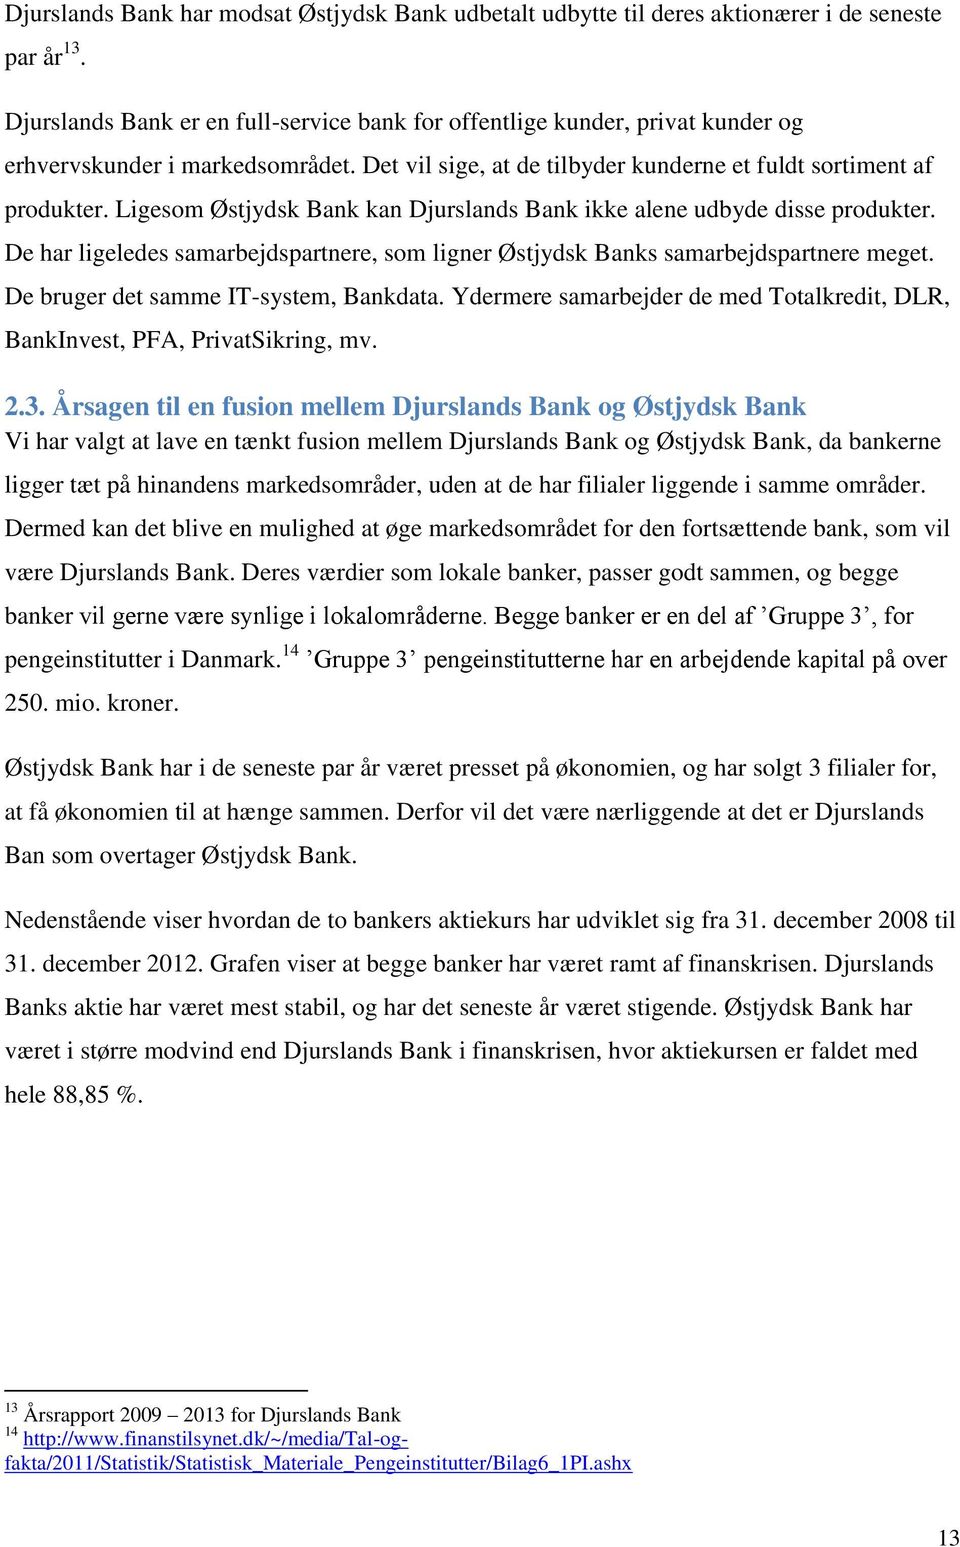 Ligesom Østjydsk Bank kan Djurslands Bank ikke alene udbyde disse produkter. De har ligeledes samarbejdspartnere, som ligner Østjydsk Banks samarbejdspartnere meget.